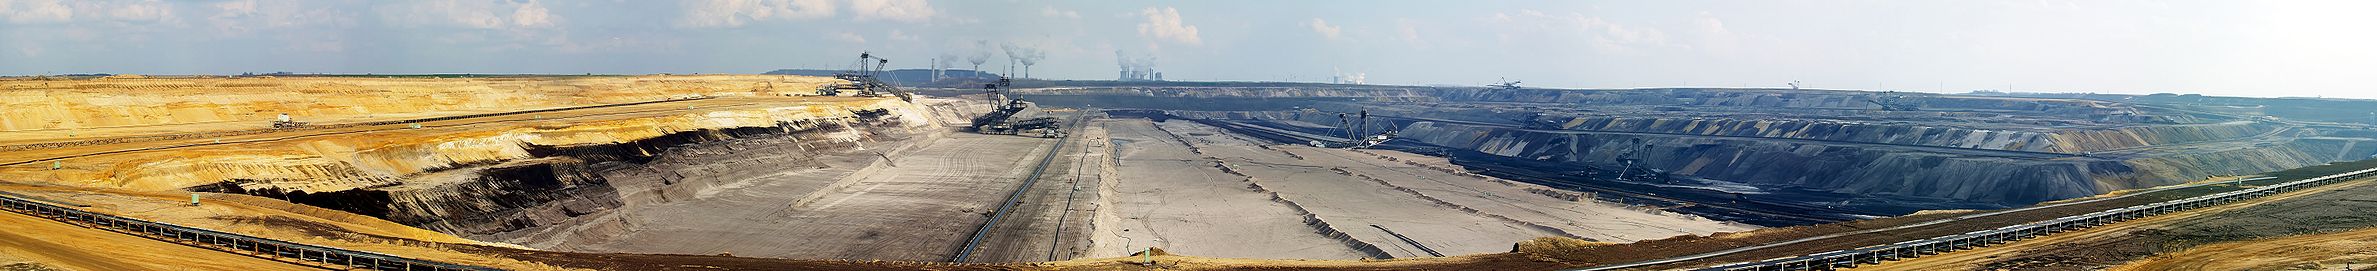 Панорама карьера Гарцвайль по добыче бурого угля, Германия